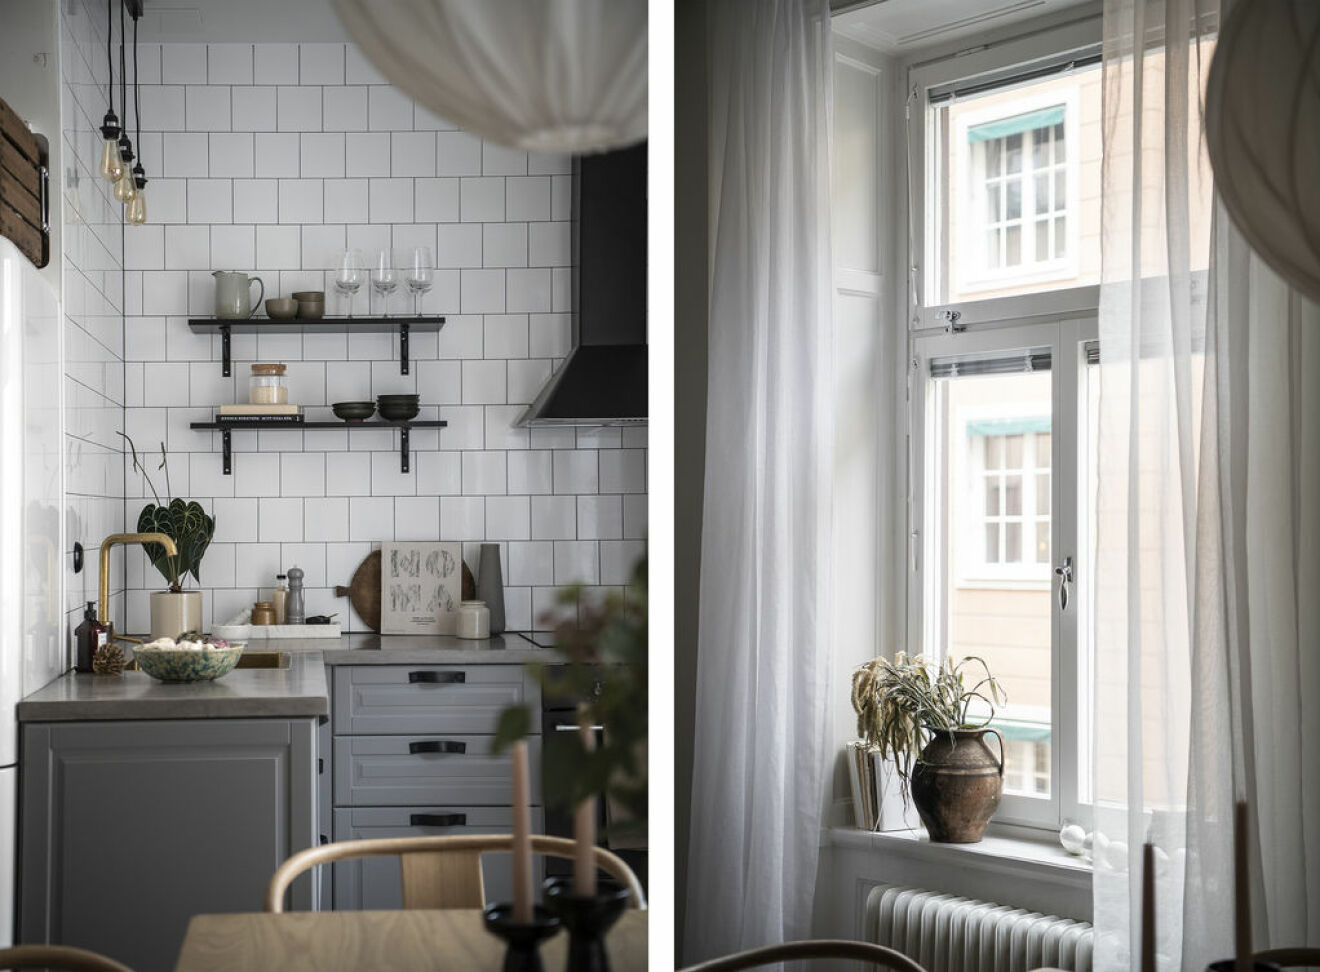 Kök och fönster i Angelica Blicks sekelskifteslägenhet